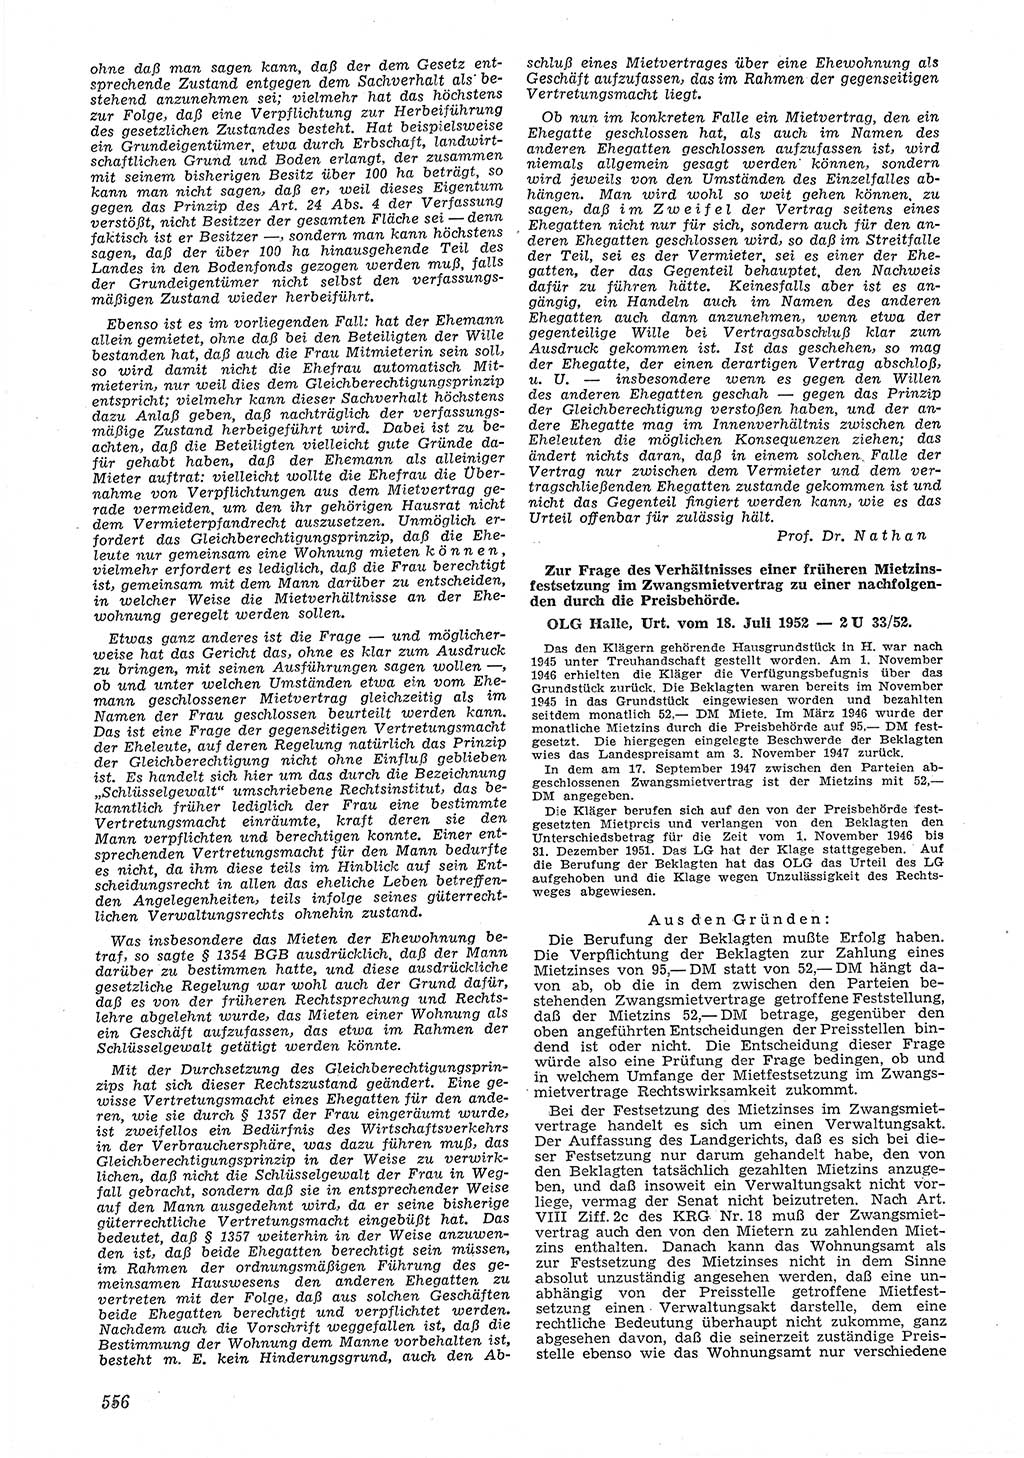 Neue Justiz (NJ), Zeitschrift für Recht und Rechtswissenschaft [Deutsche Demokratische Republik (DDR)], 6. Jahrgang 1952, Seite 556 (NJ DDR 1952, S. 556)